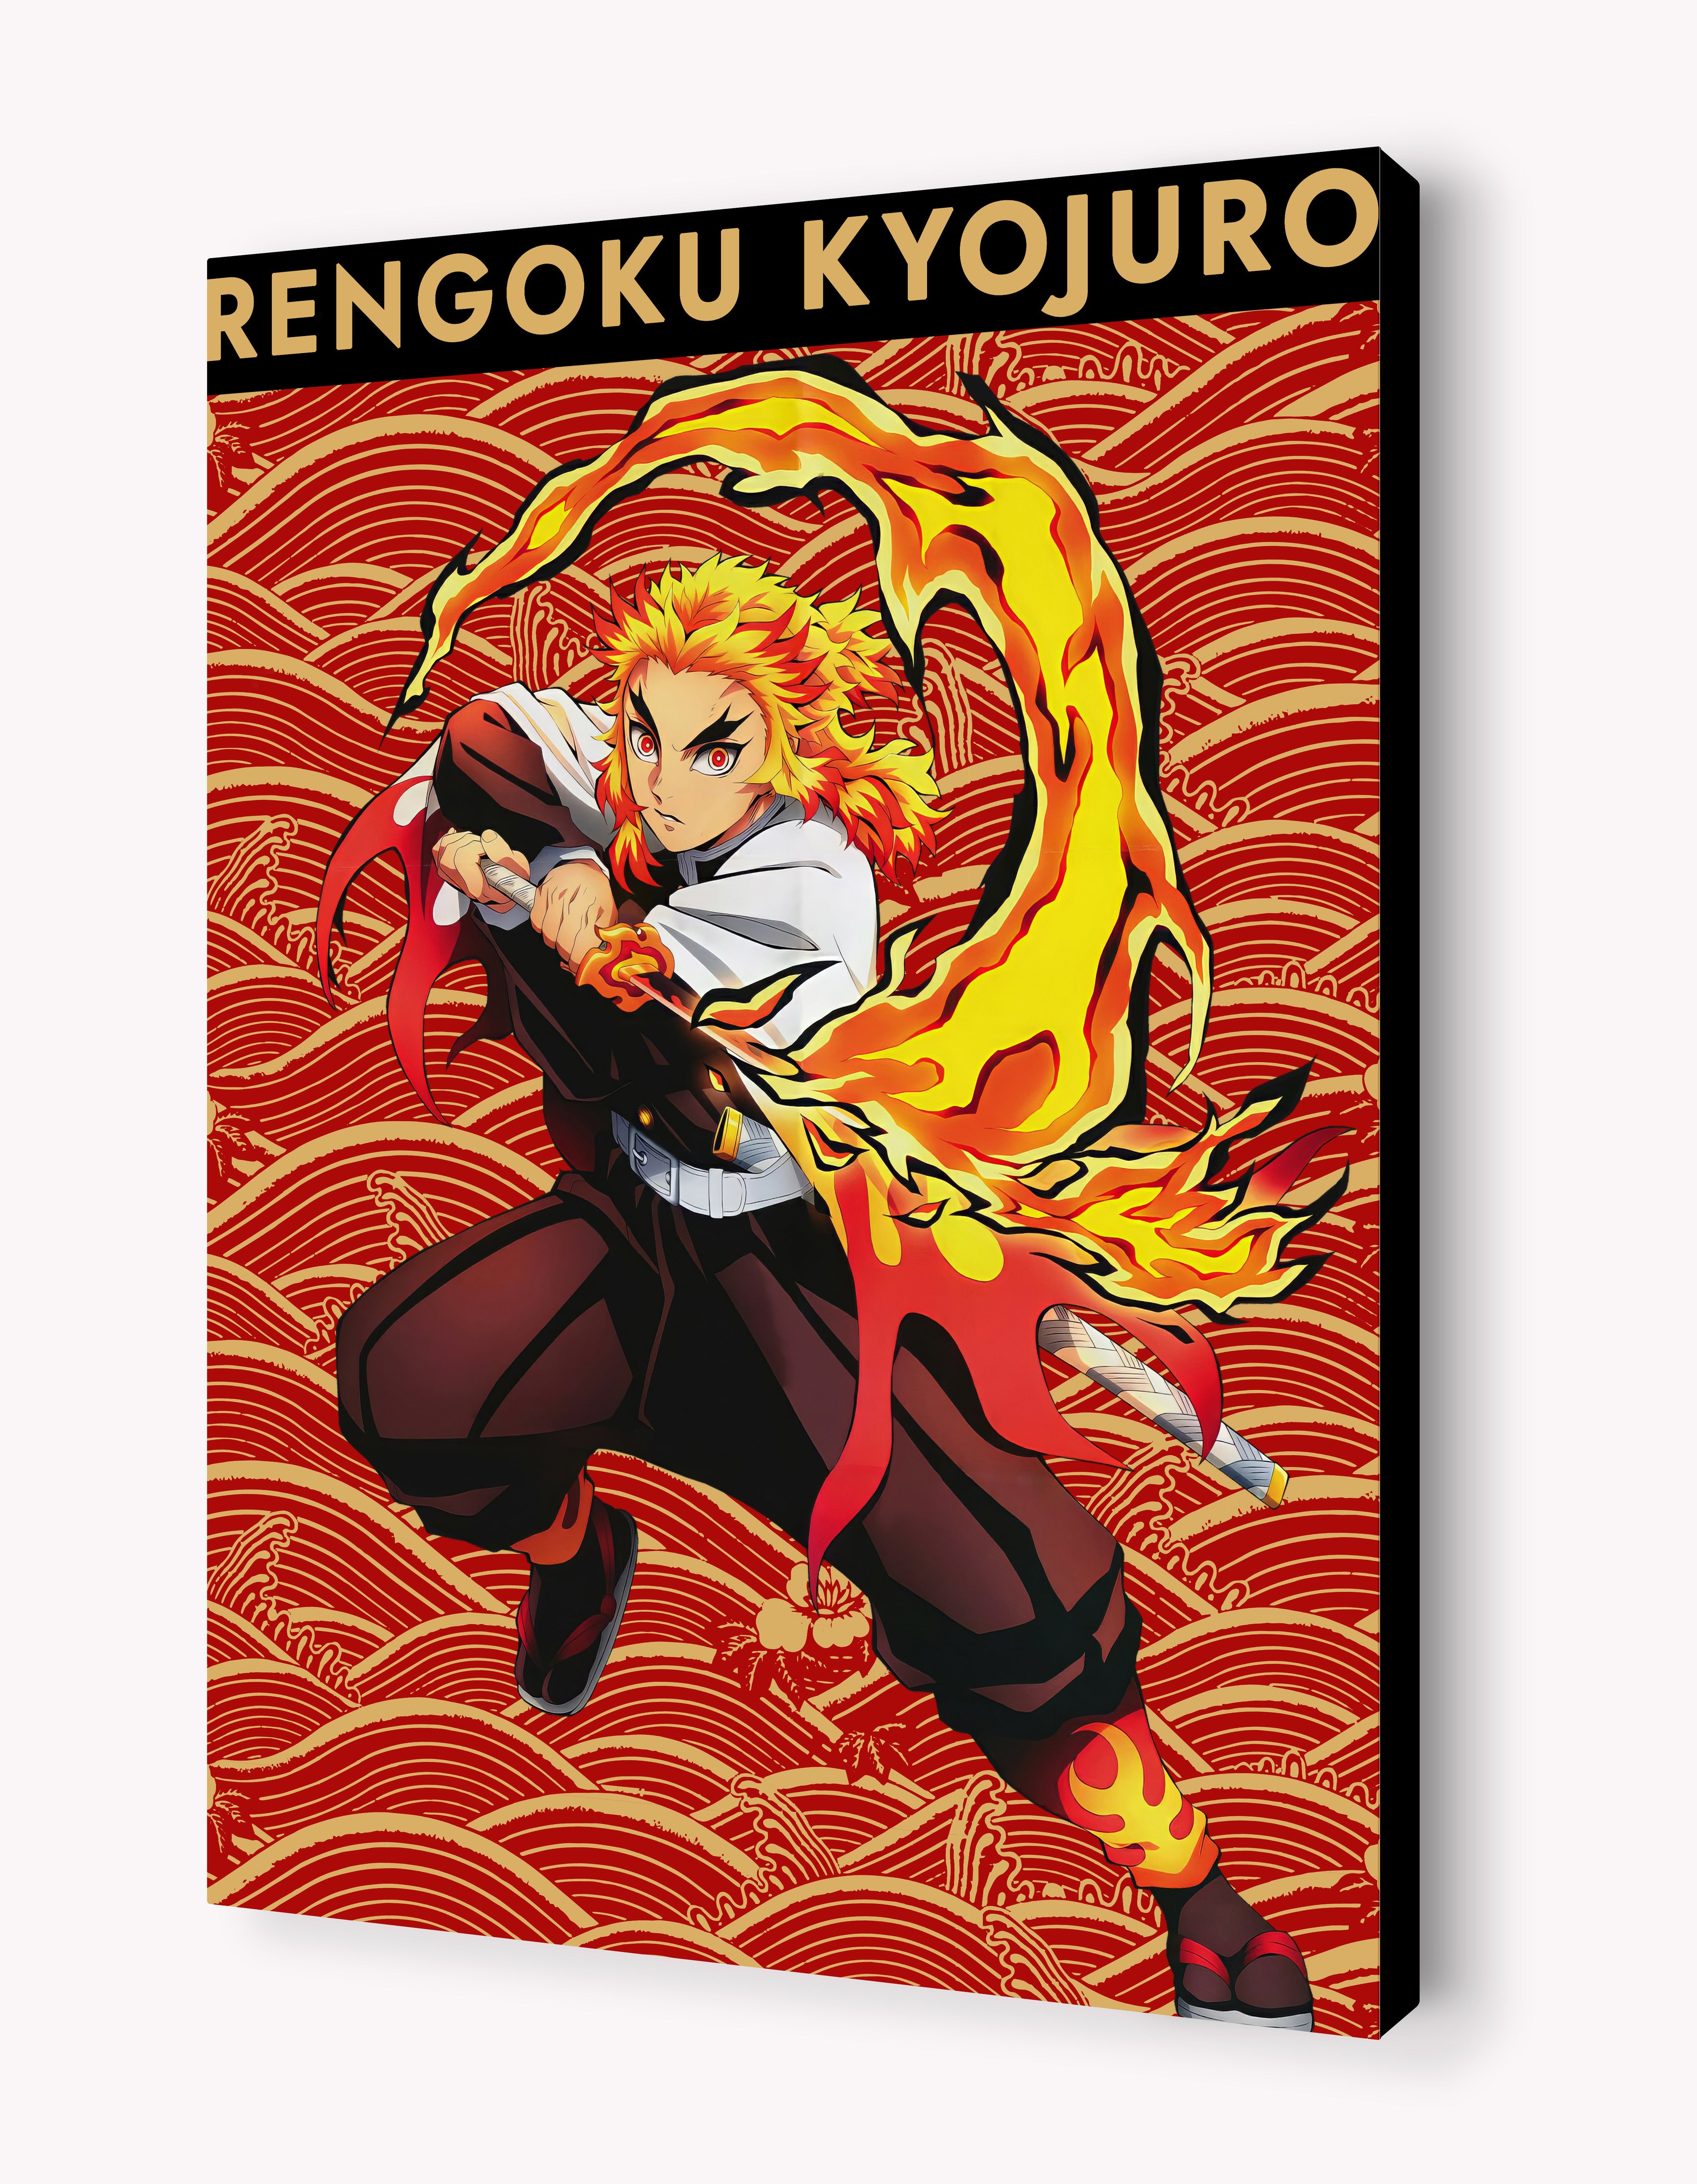 Rengoku Kyojuro - Flame's Pride